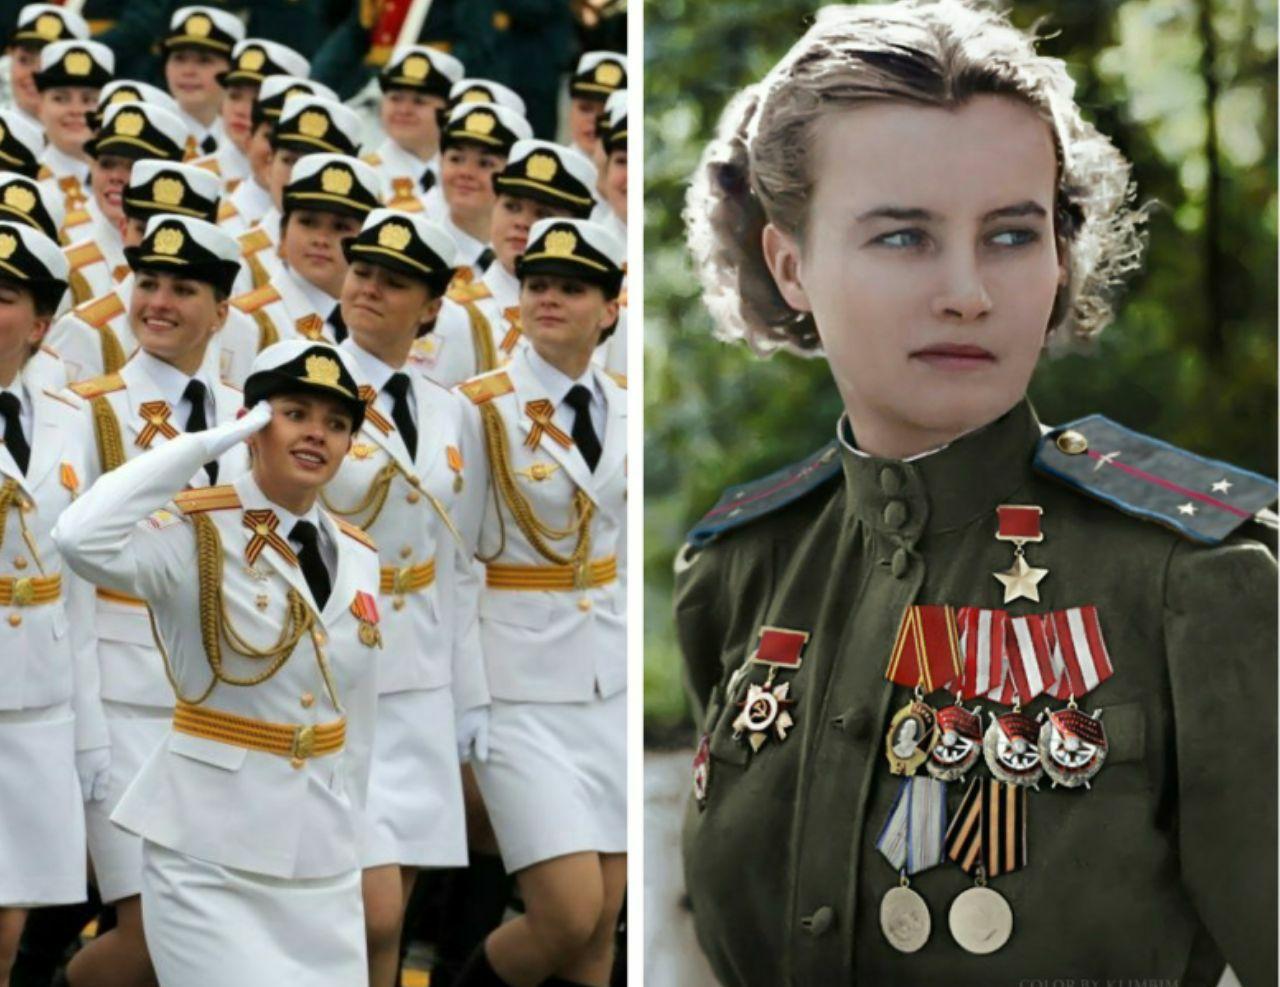 زنان روس در جنگ و رژه روز پیروزی  <img src="/images/picture_icon.gif" width="16" height="13" border="0" align="top">